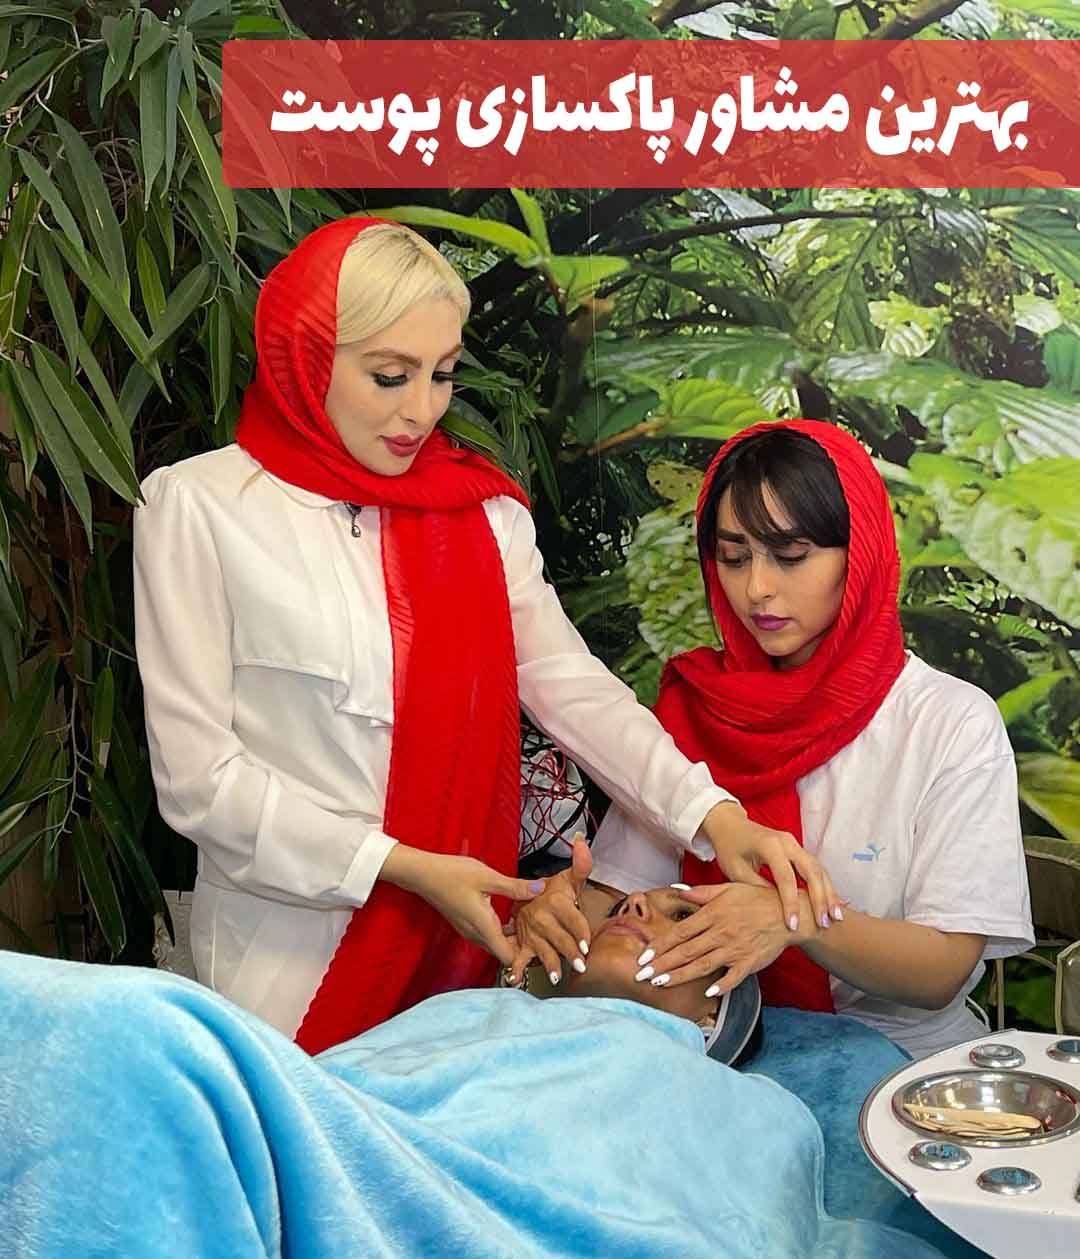 بهترین مشاور پاکسازی پوست در استان تهران